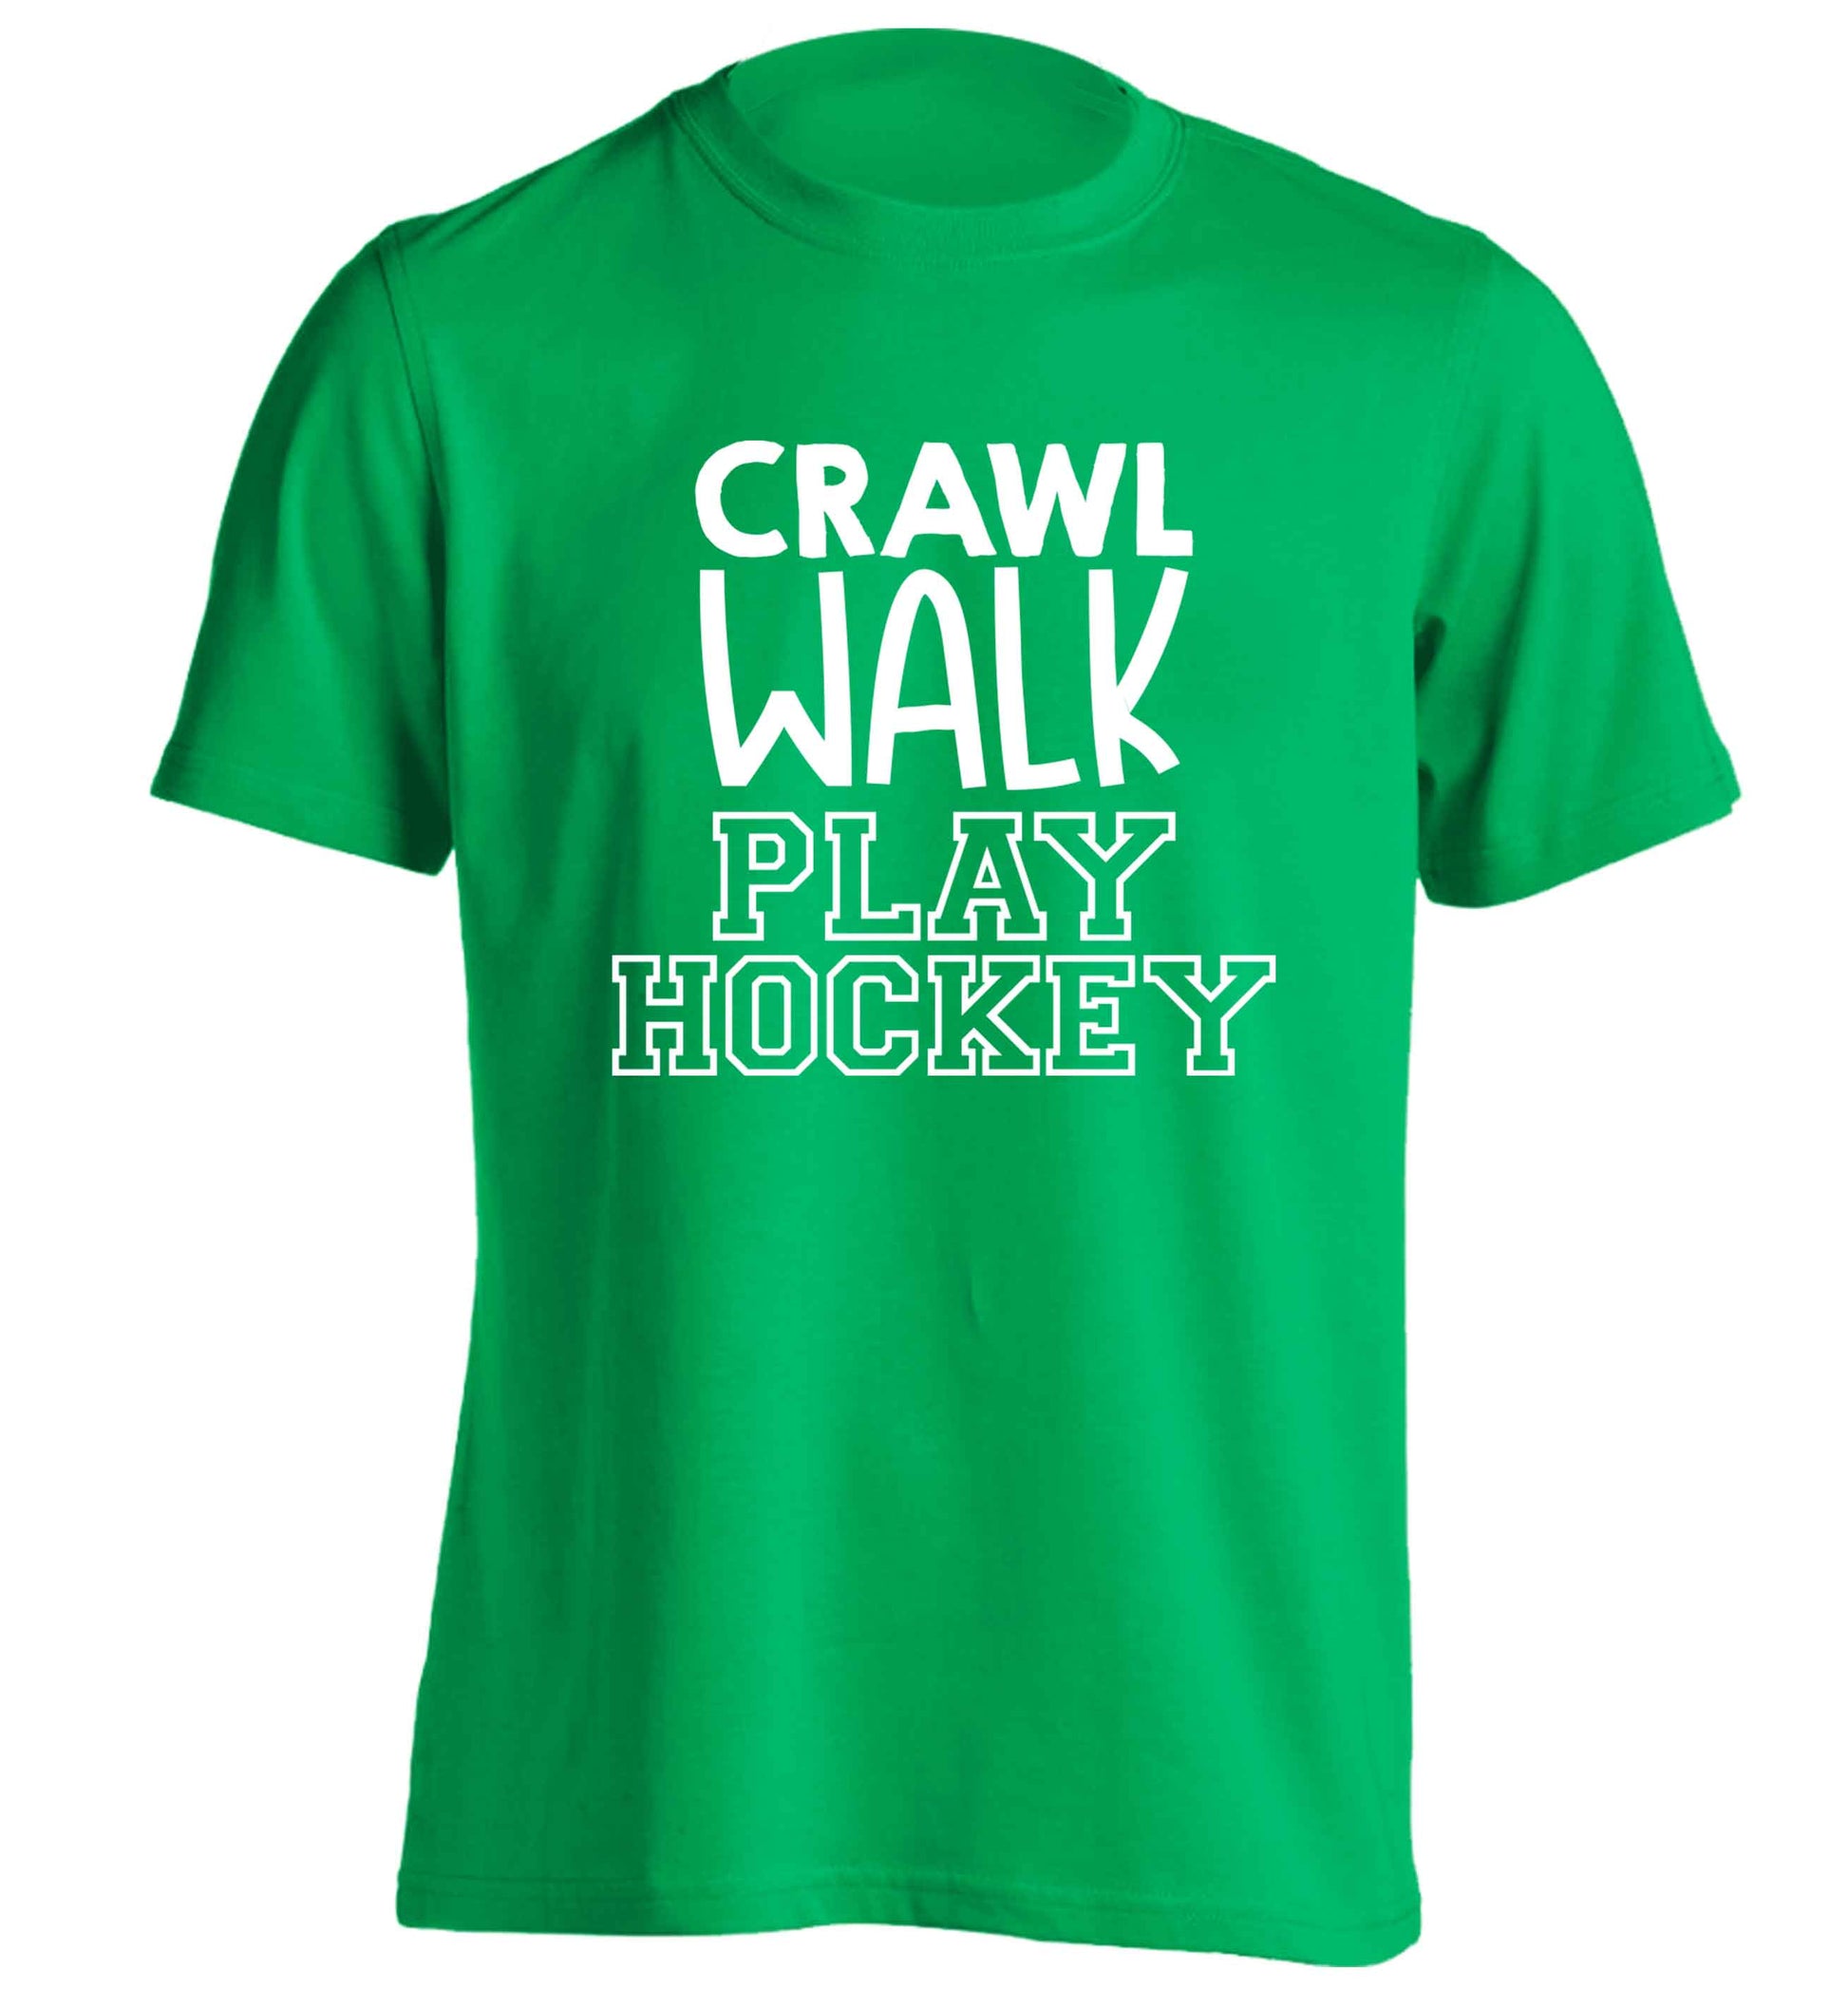 Crawl walk play hockey adults unisex green Tshirt 2XL